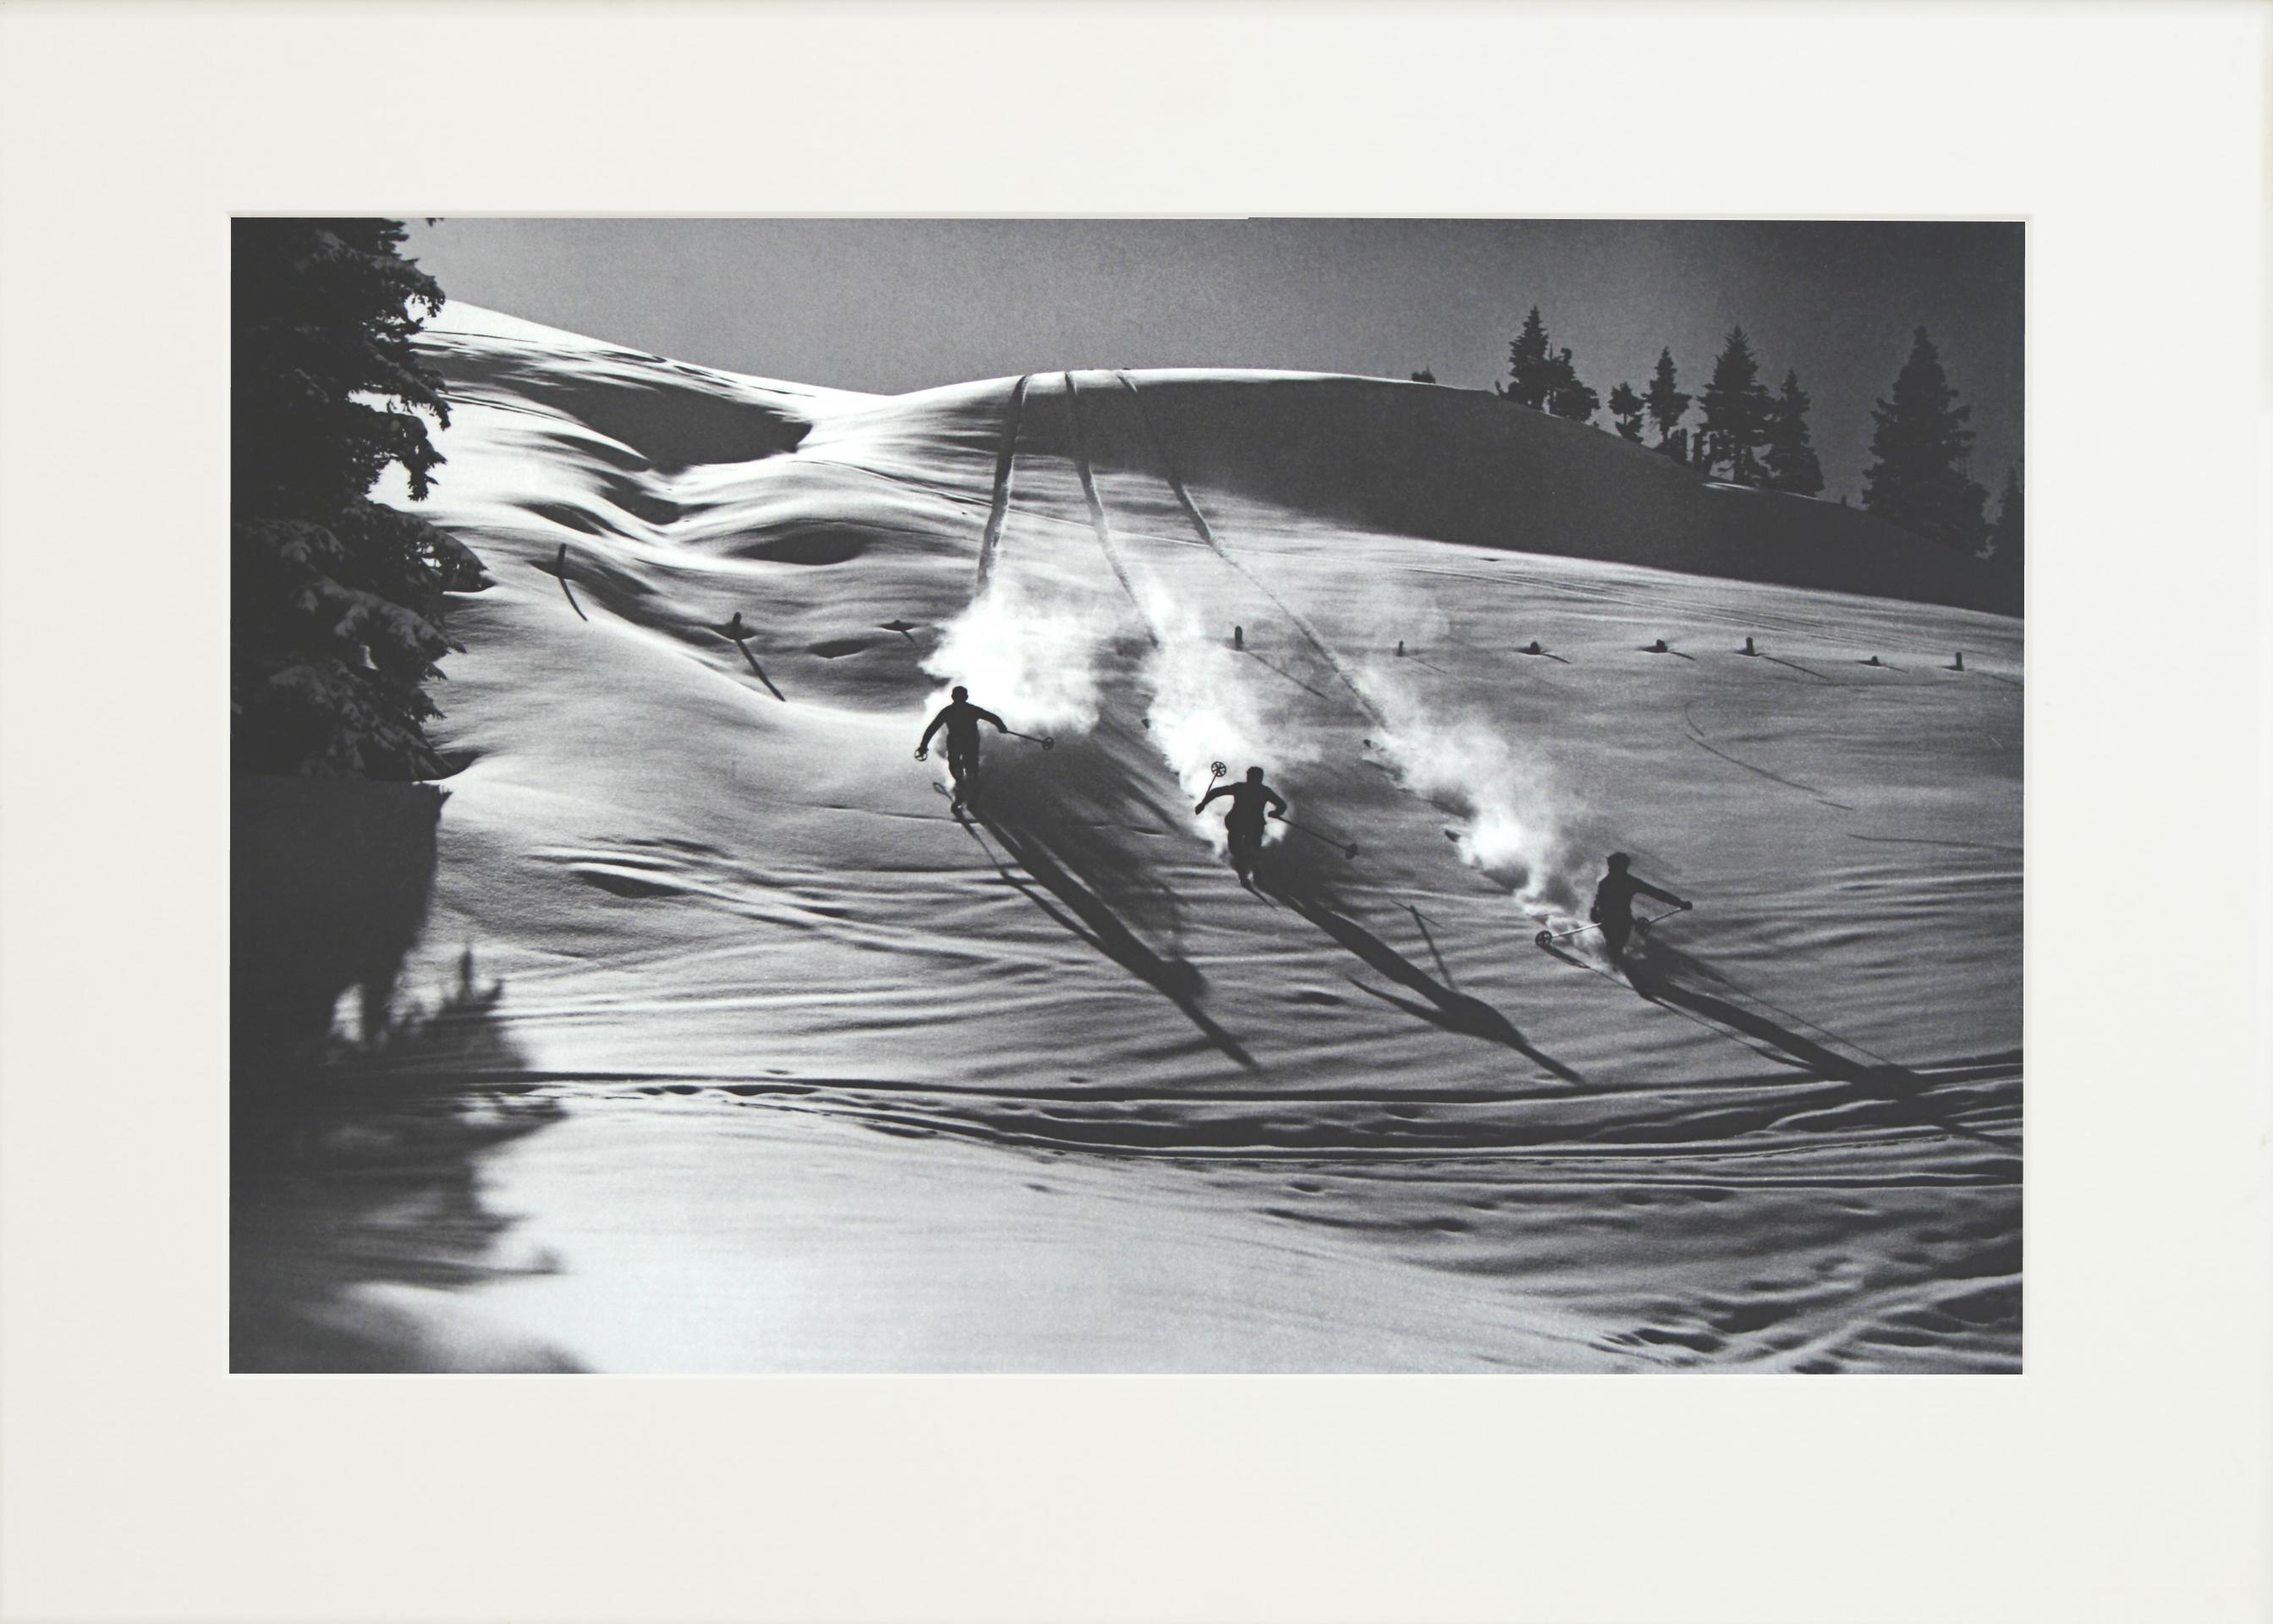 Fotografía de esquí de época, Fotografía antigua de esquí alpino, 'Descenso en la nieve polvo' Arte deportivo en venta